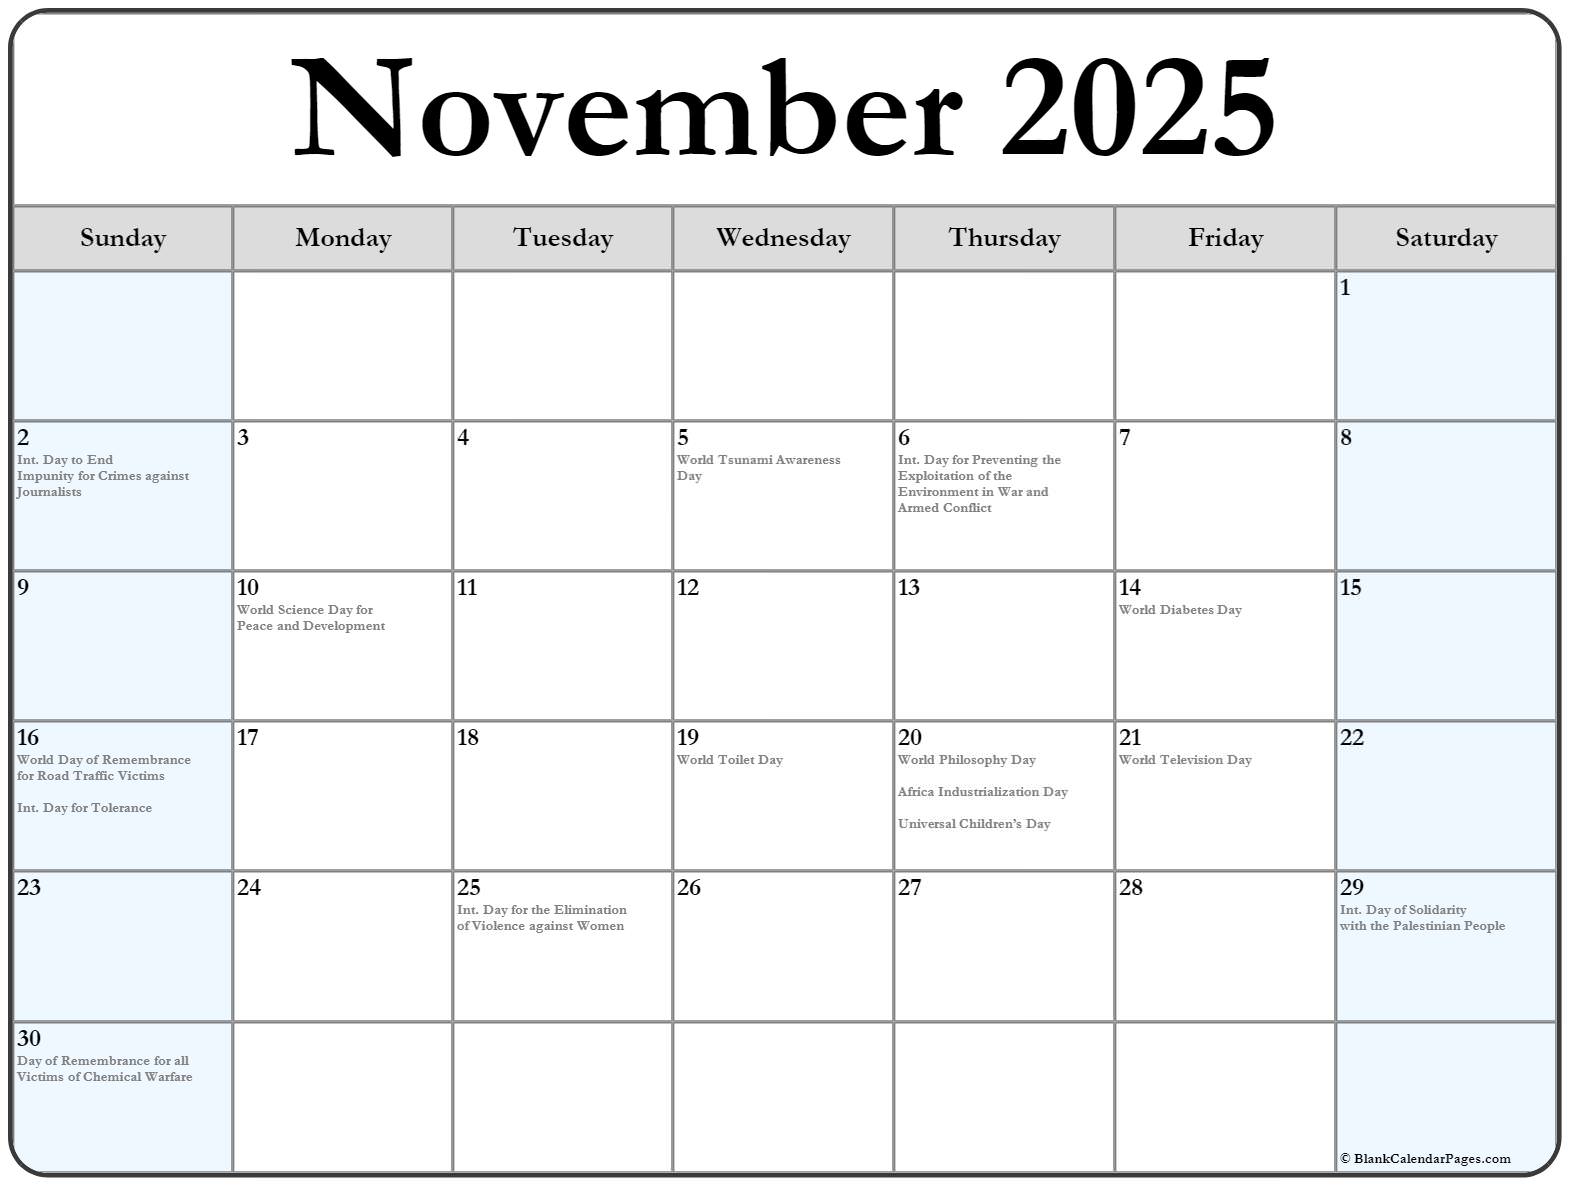 Сборники декабрь 2023. Календарь декабрь 2023. Календарь на декабрь 2023 года. Ноябрь декабрь 2023. Календарь на 2023 декабрь месяц с праздниками.